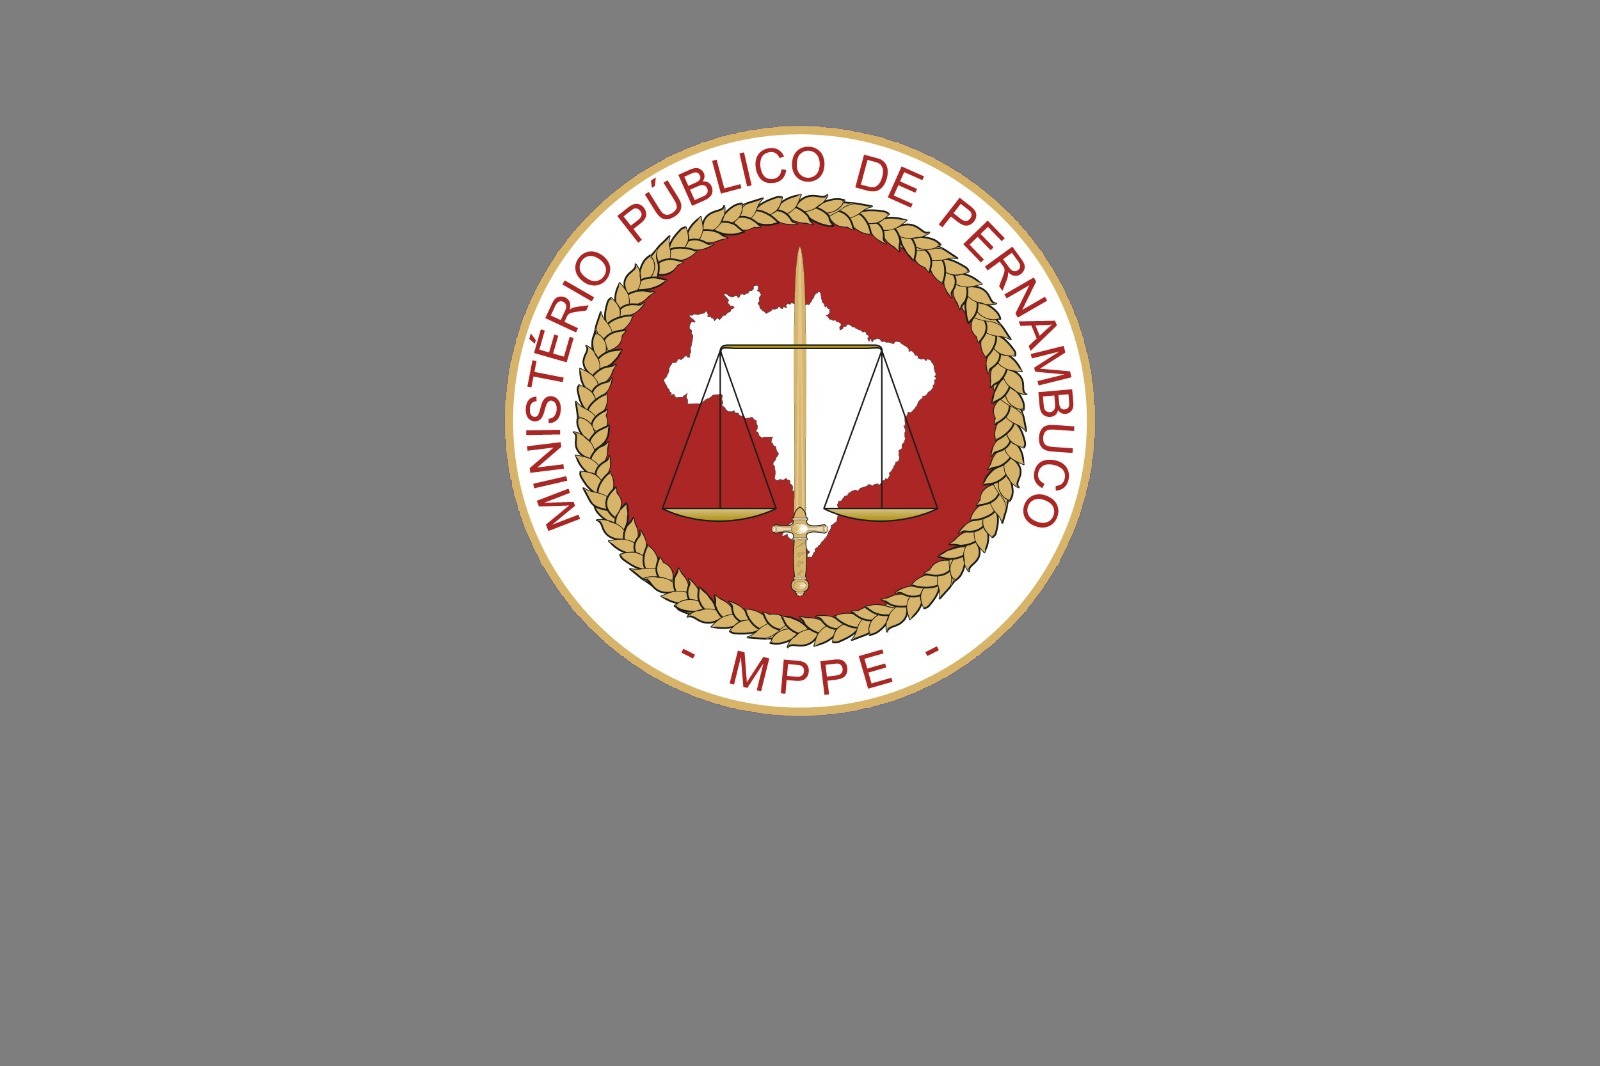 MPPE deflagra a operação contra crimes no Detran